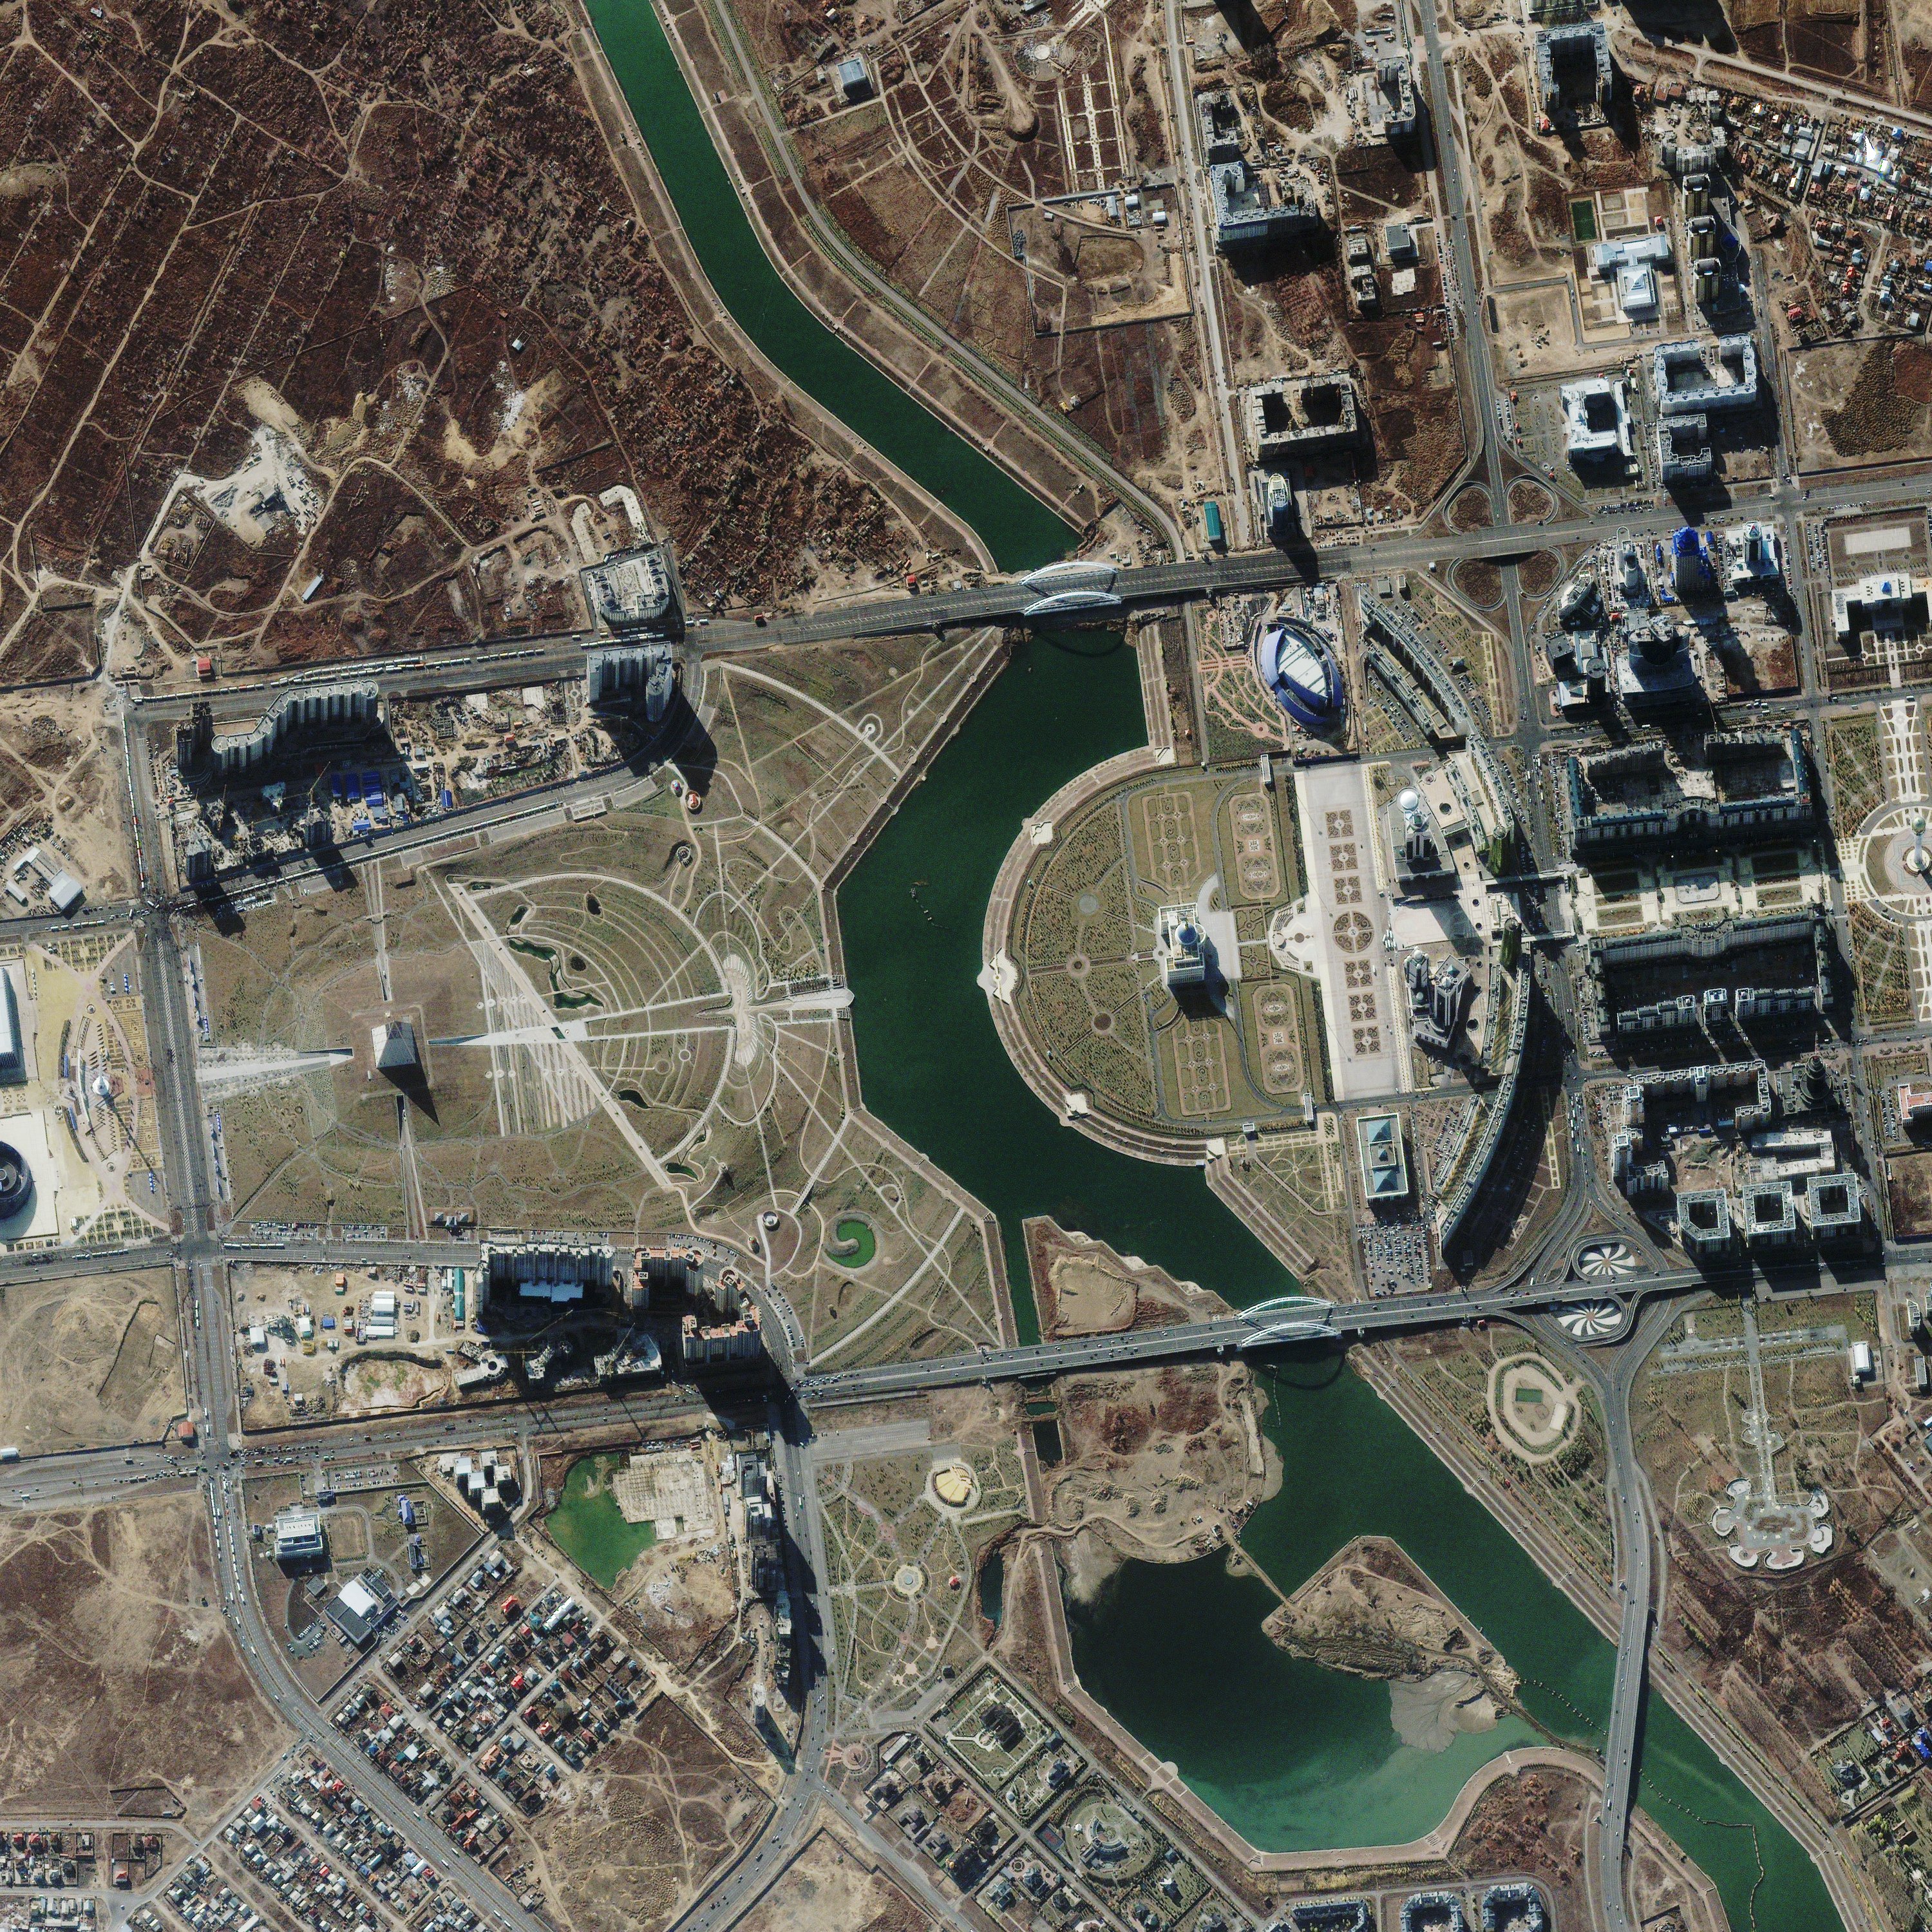 фото карт со спутника